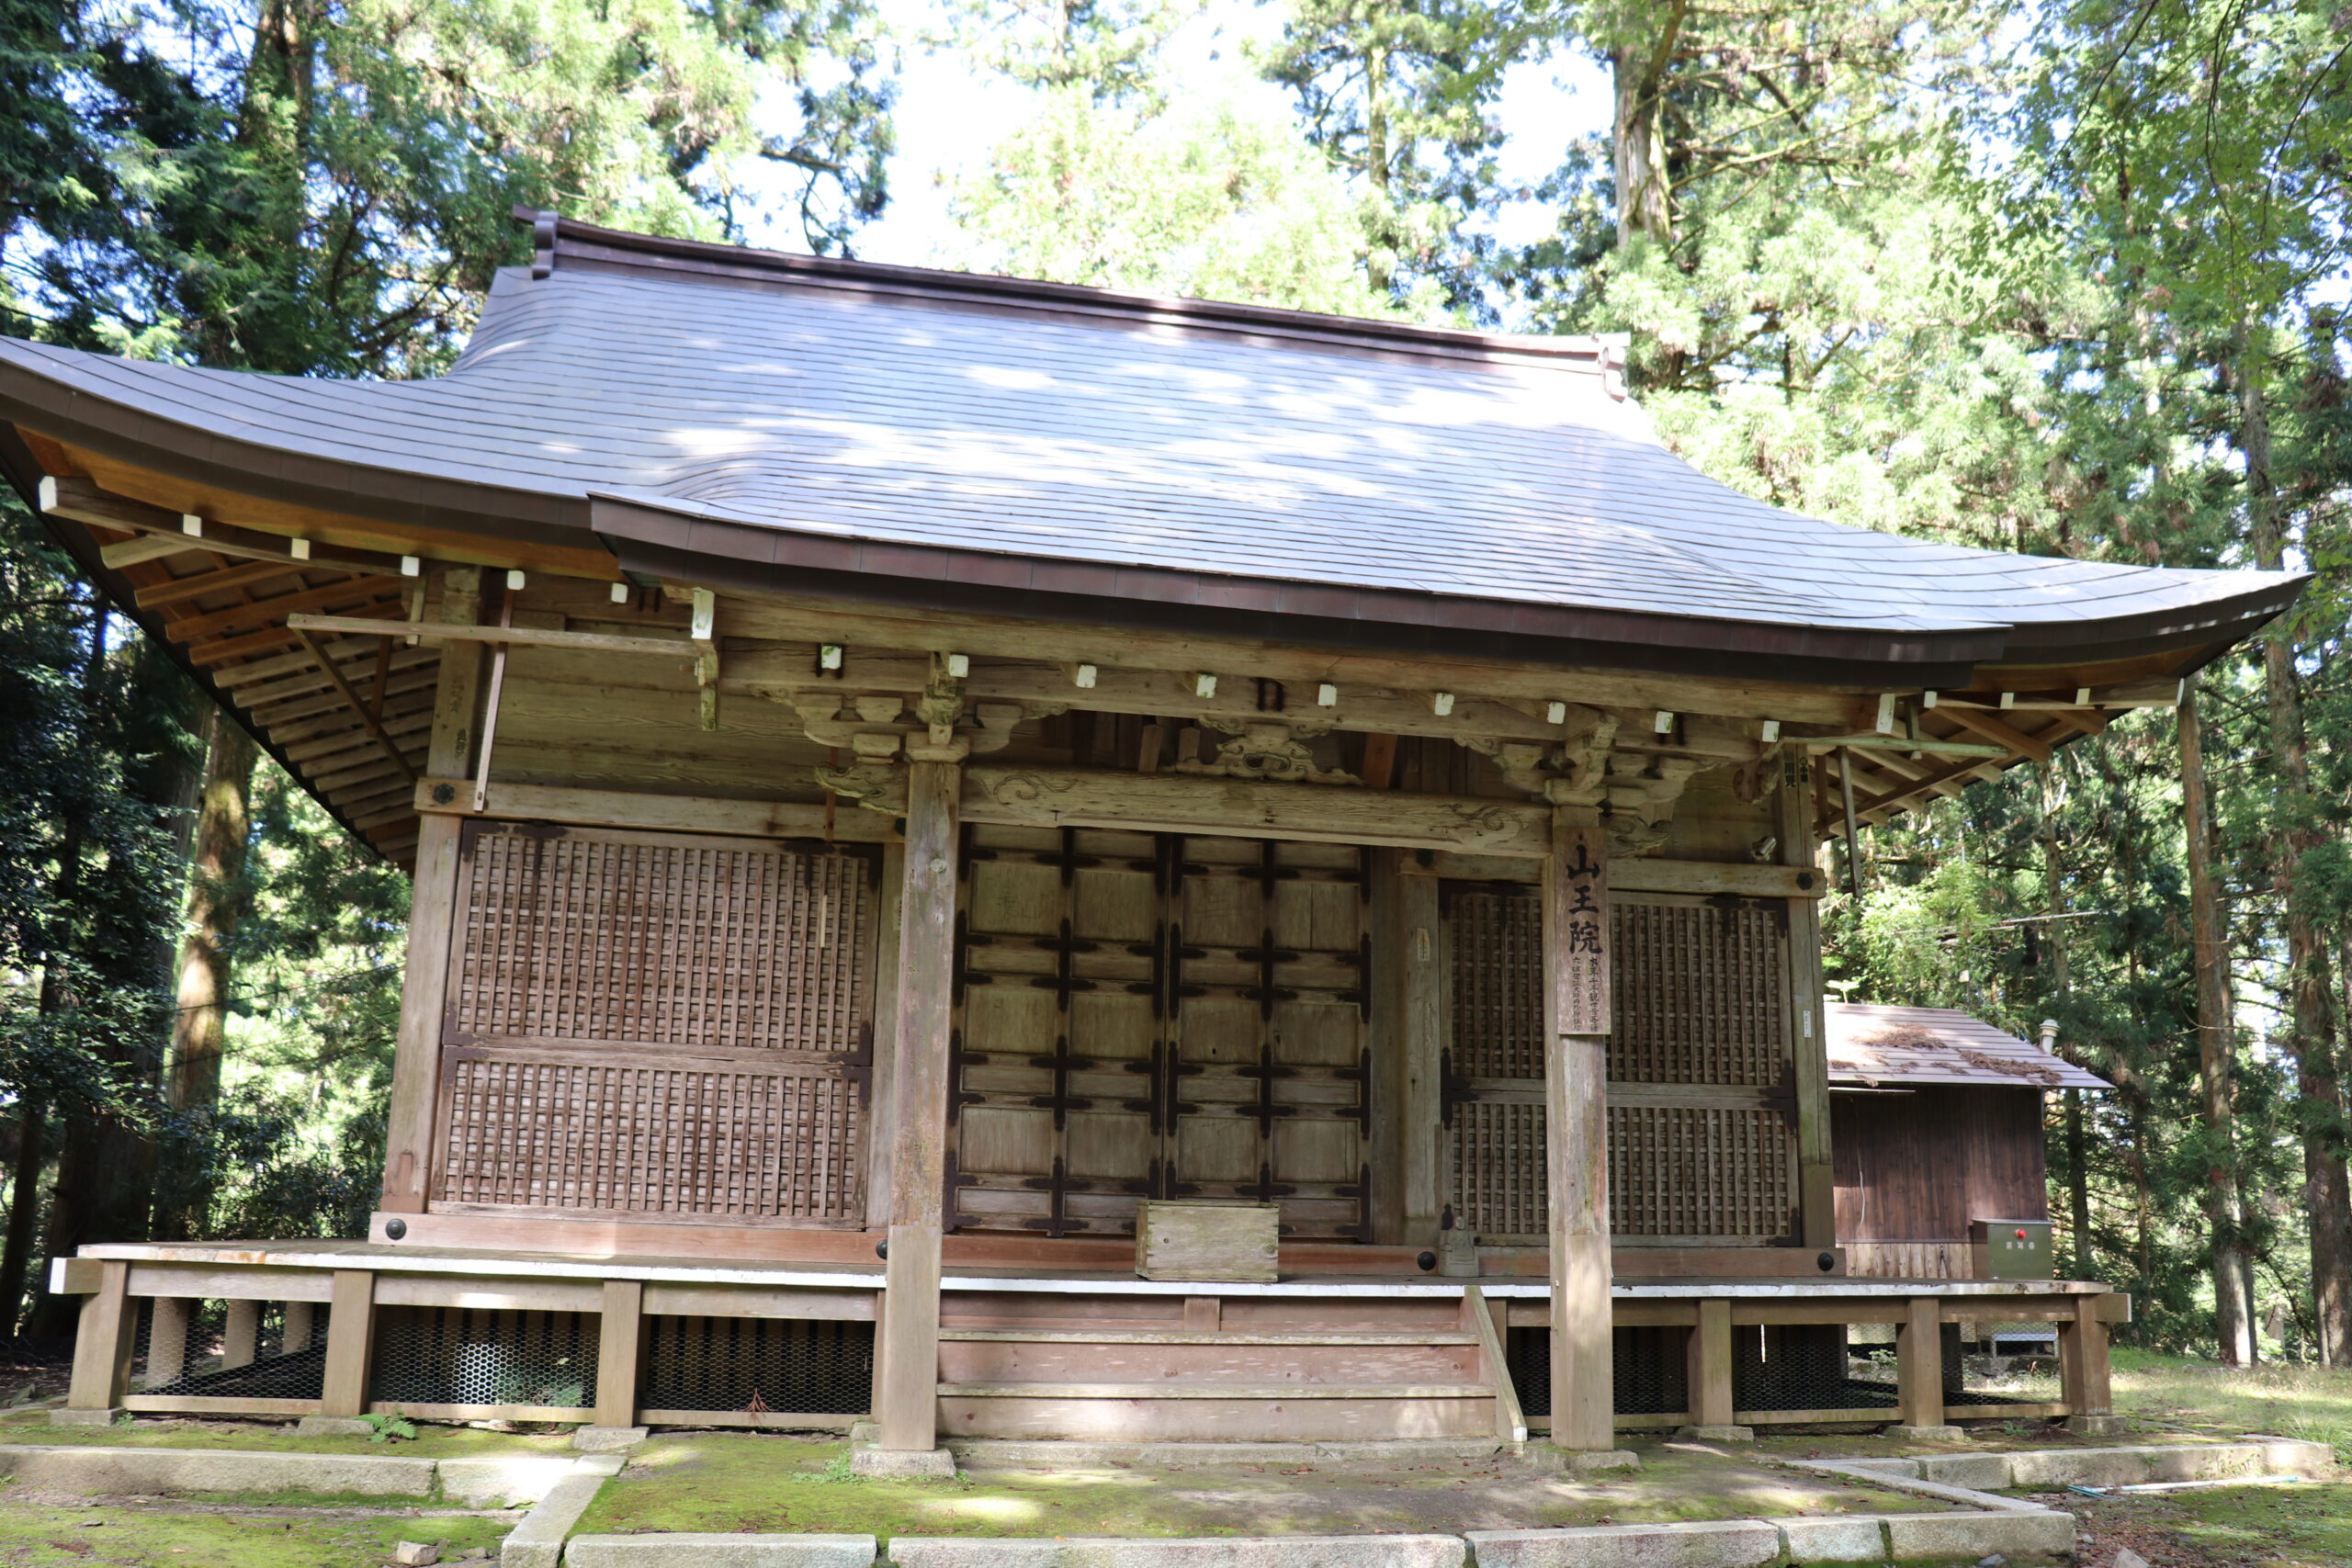 Sanoin-do near Enryaku-ji's Sai-to Pagoda 